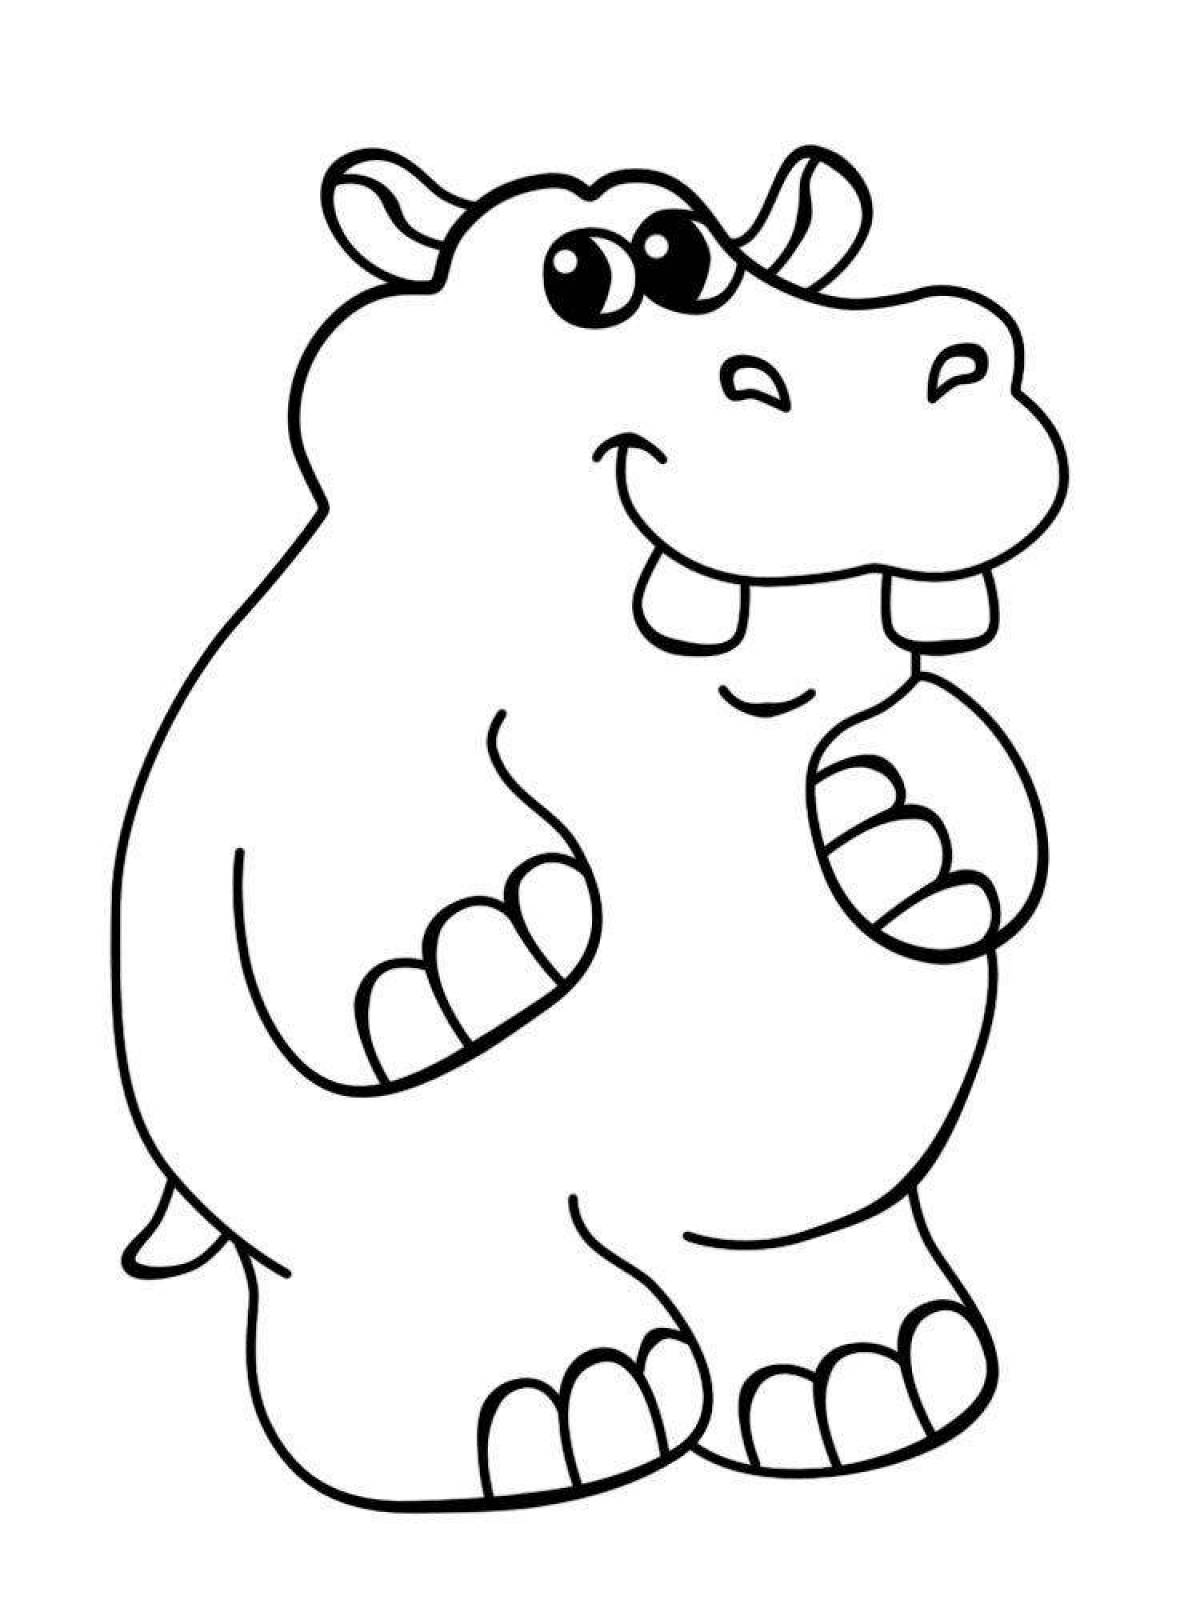 Bubble hippo coloring book